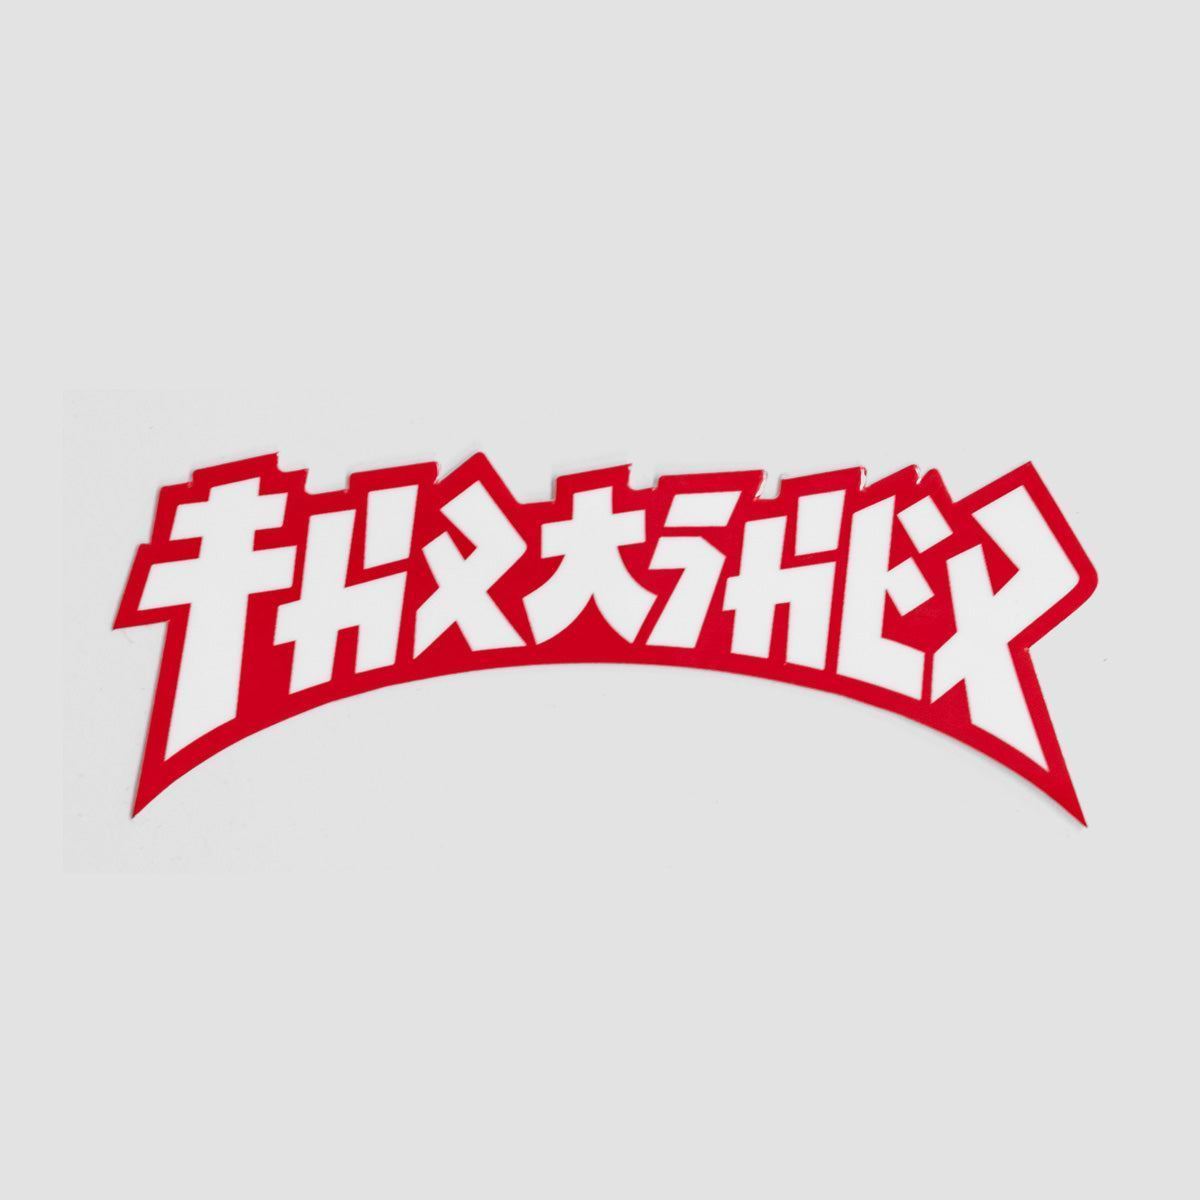 Thrasher Godzilla Die Cut Sticker White/Red 100x40mm